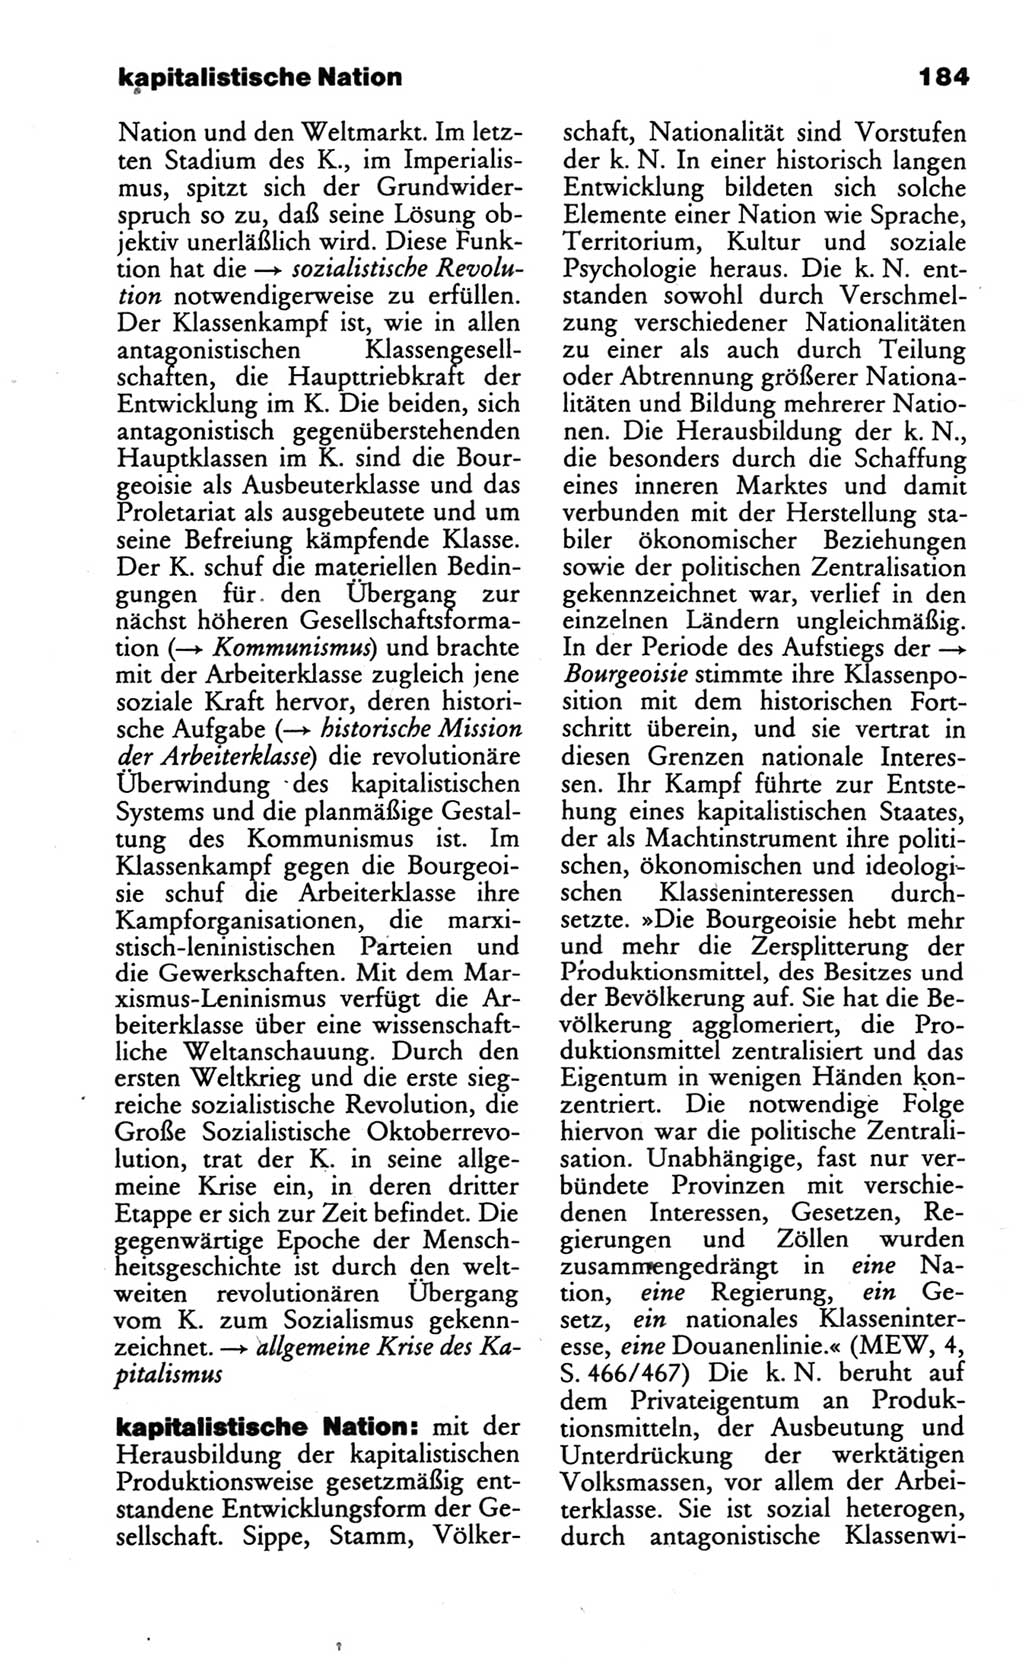 Wörterbuch des wissenschaftlichen Kommunismus [Deutsche Demokratische Republik (DDR)] 1986, Seite 184 (Wb. wiss. Komm. DDR 1986, S. 184)